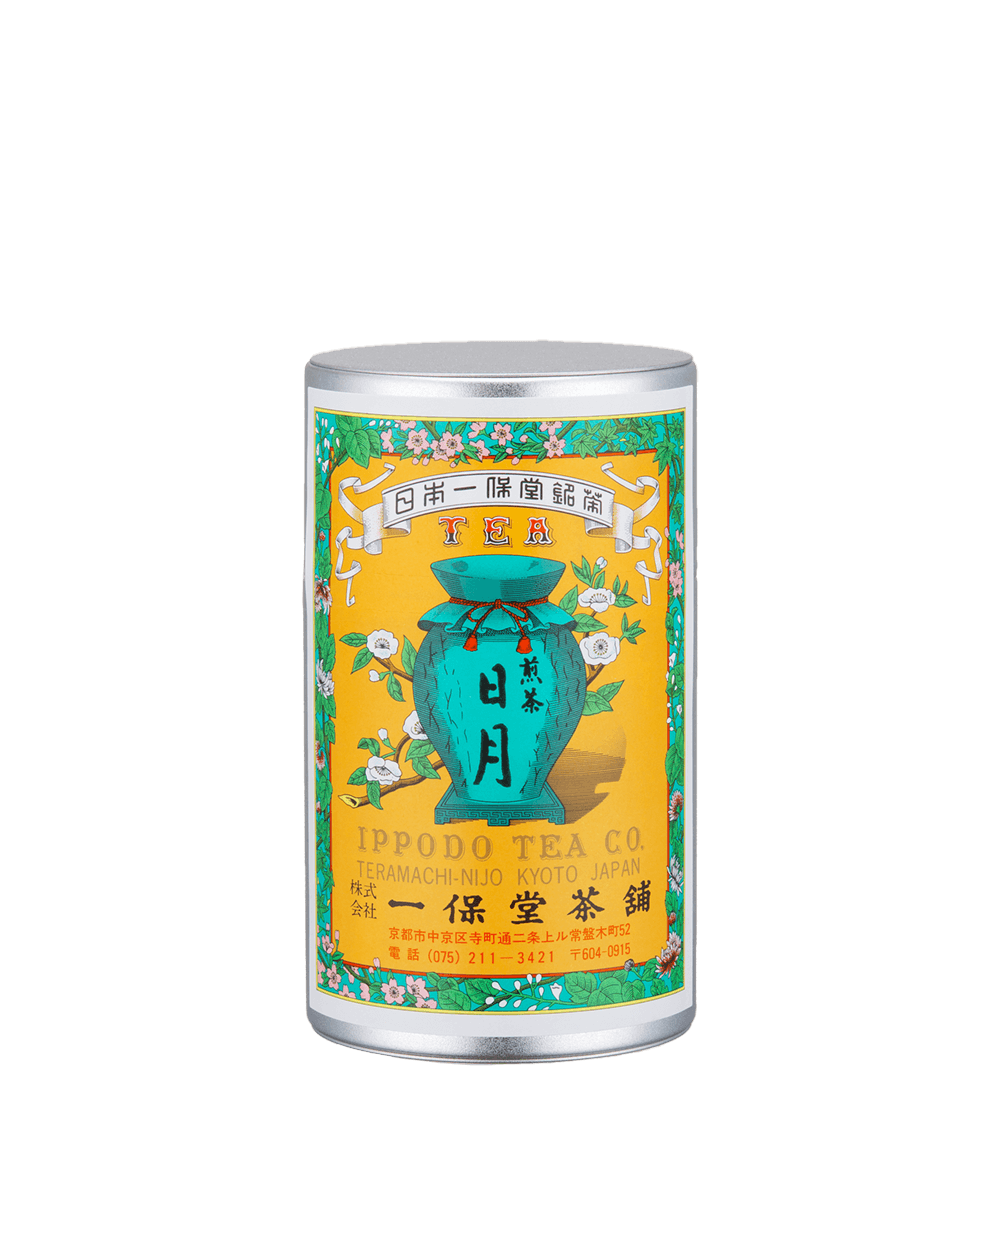 煎茶 日月(にちげつ)中缶箱(160g) – 一保堂茶舗